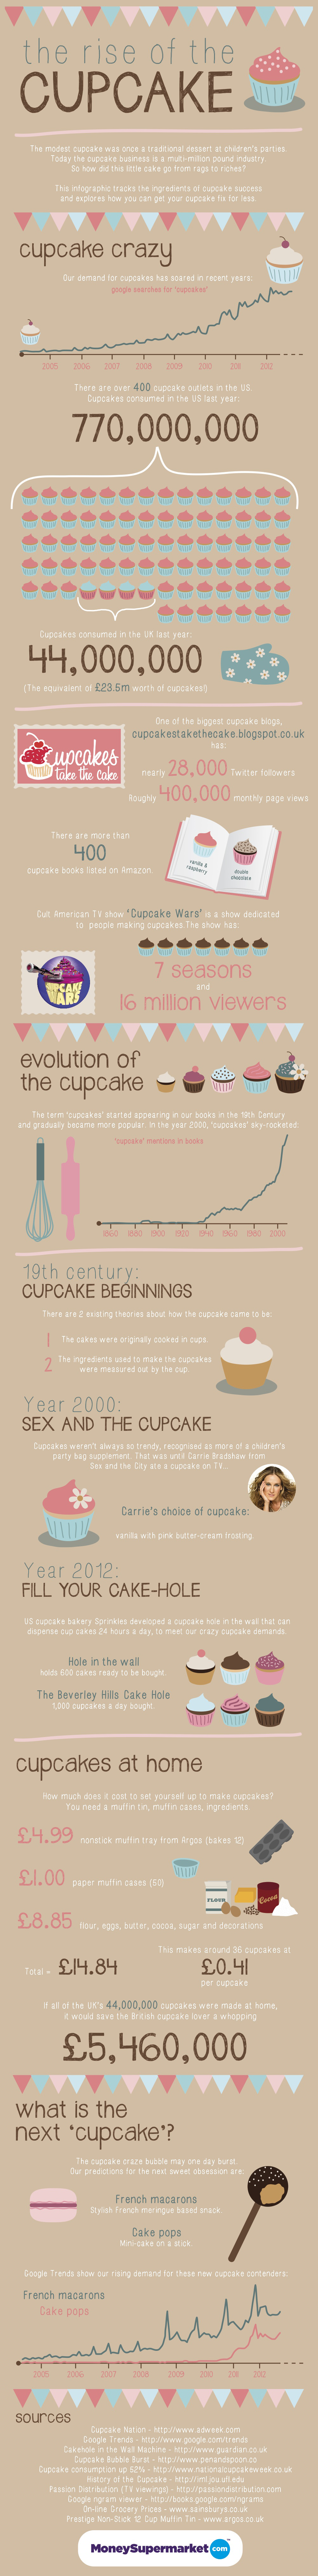 Het ontstaan van de cupcake